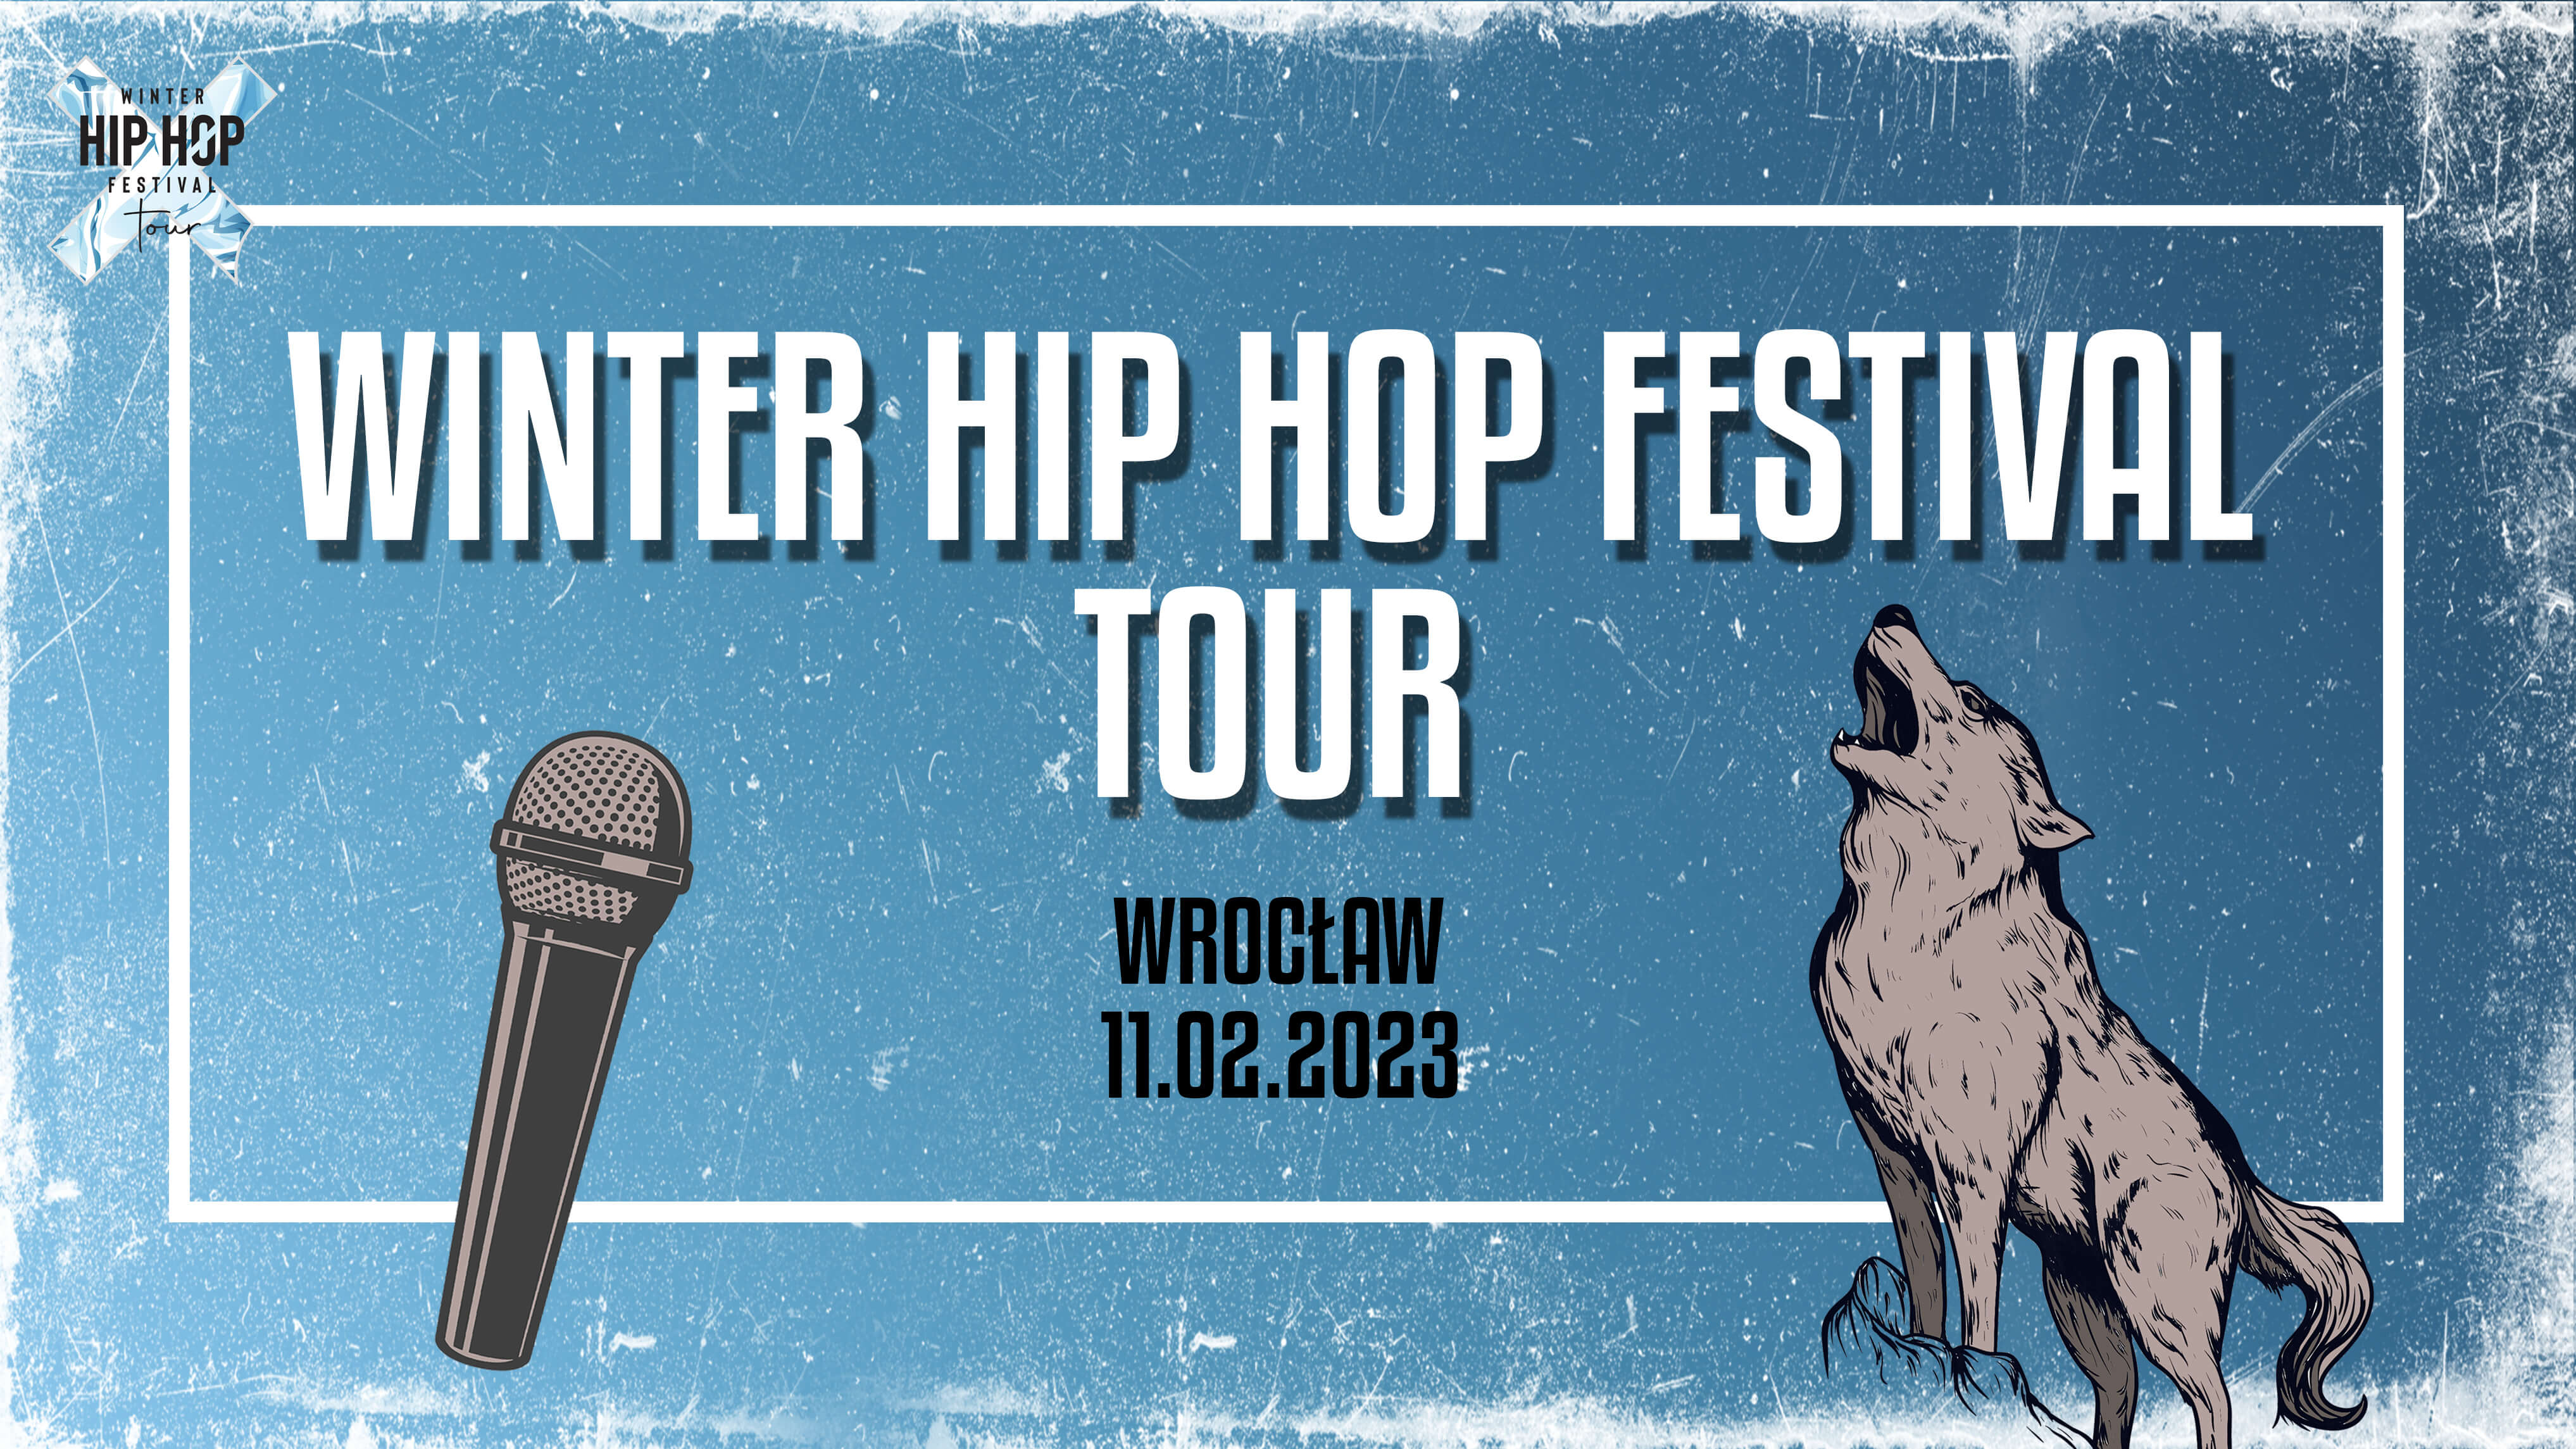 Winter Hip Hop Festival Tour 6a